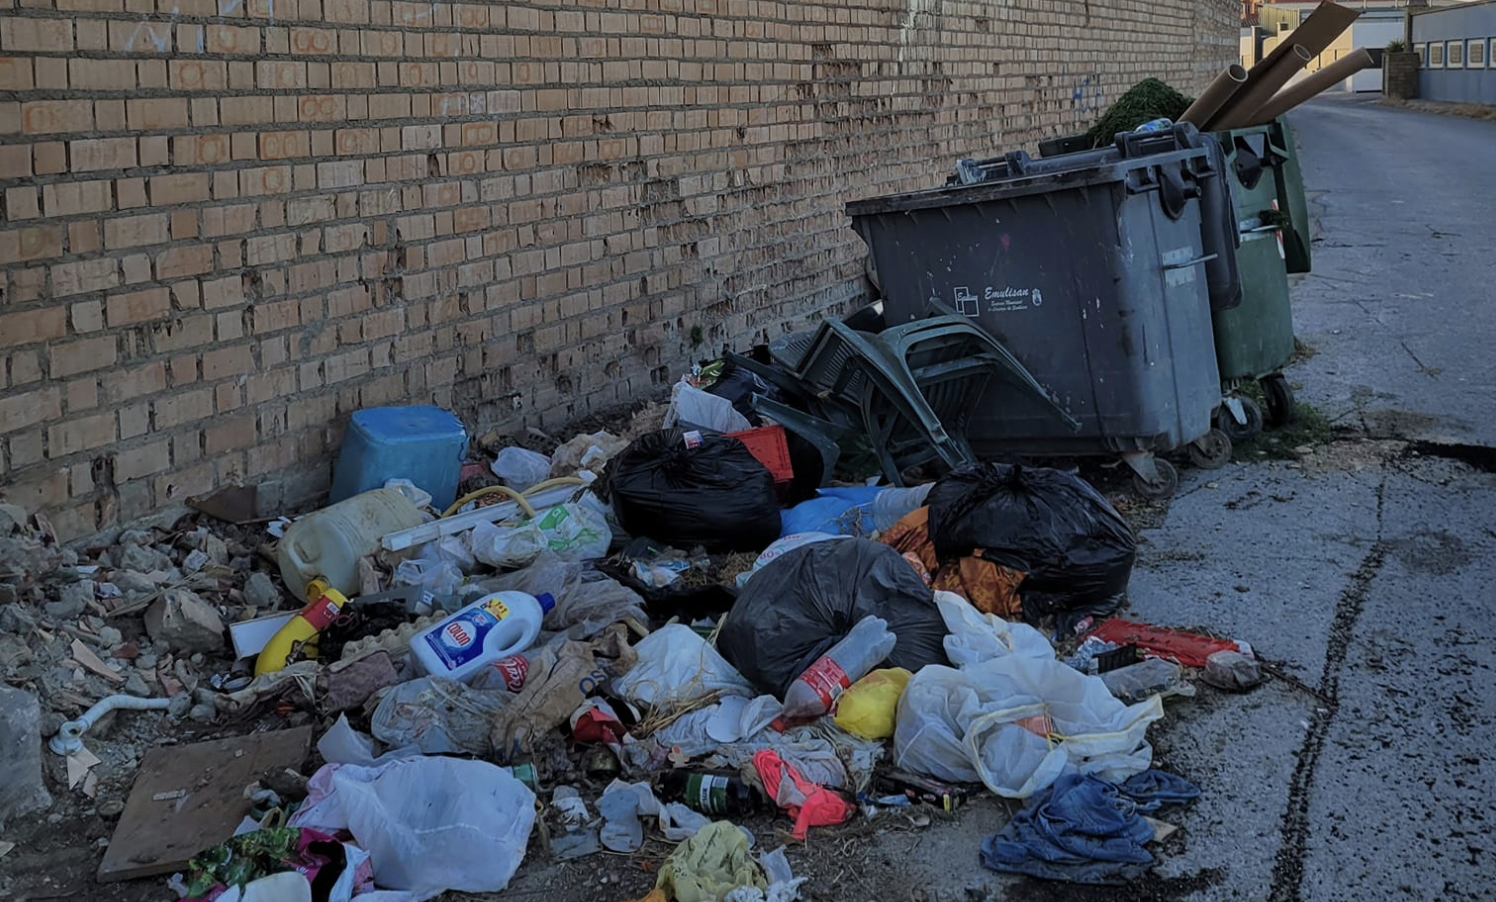 Acumulación de basura en el Camino del Cortijillo, en Sanlúcar, donde se encuentran gallinas muertas y colchones junto a contenedores vacíos.